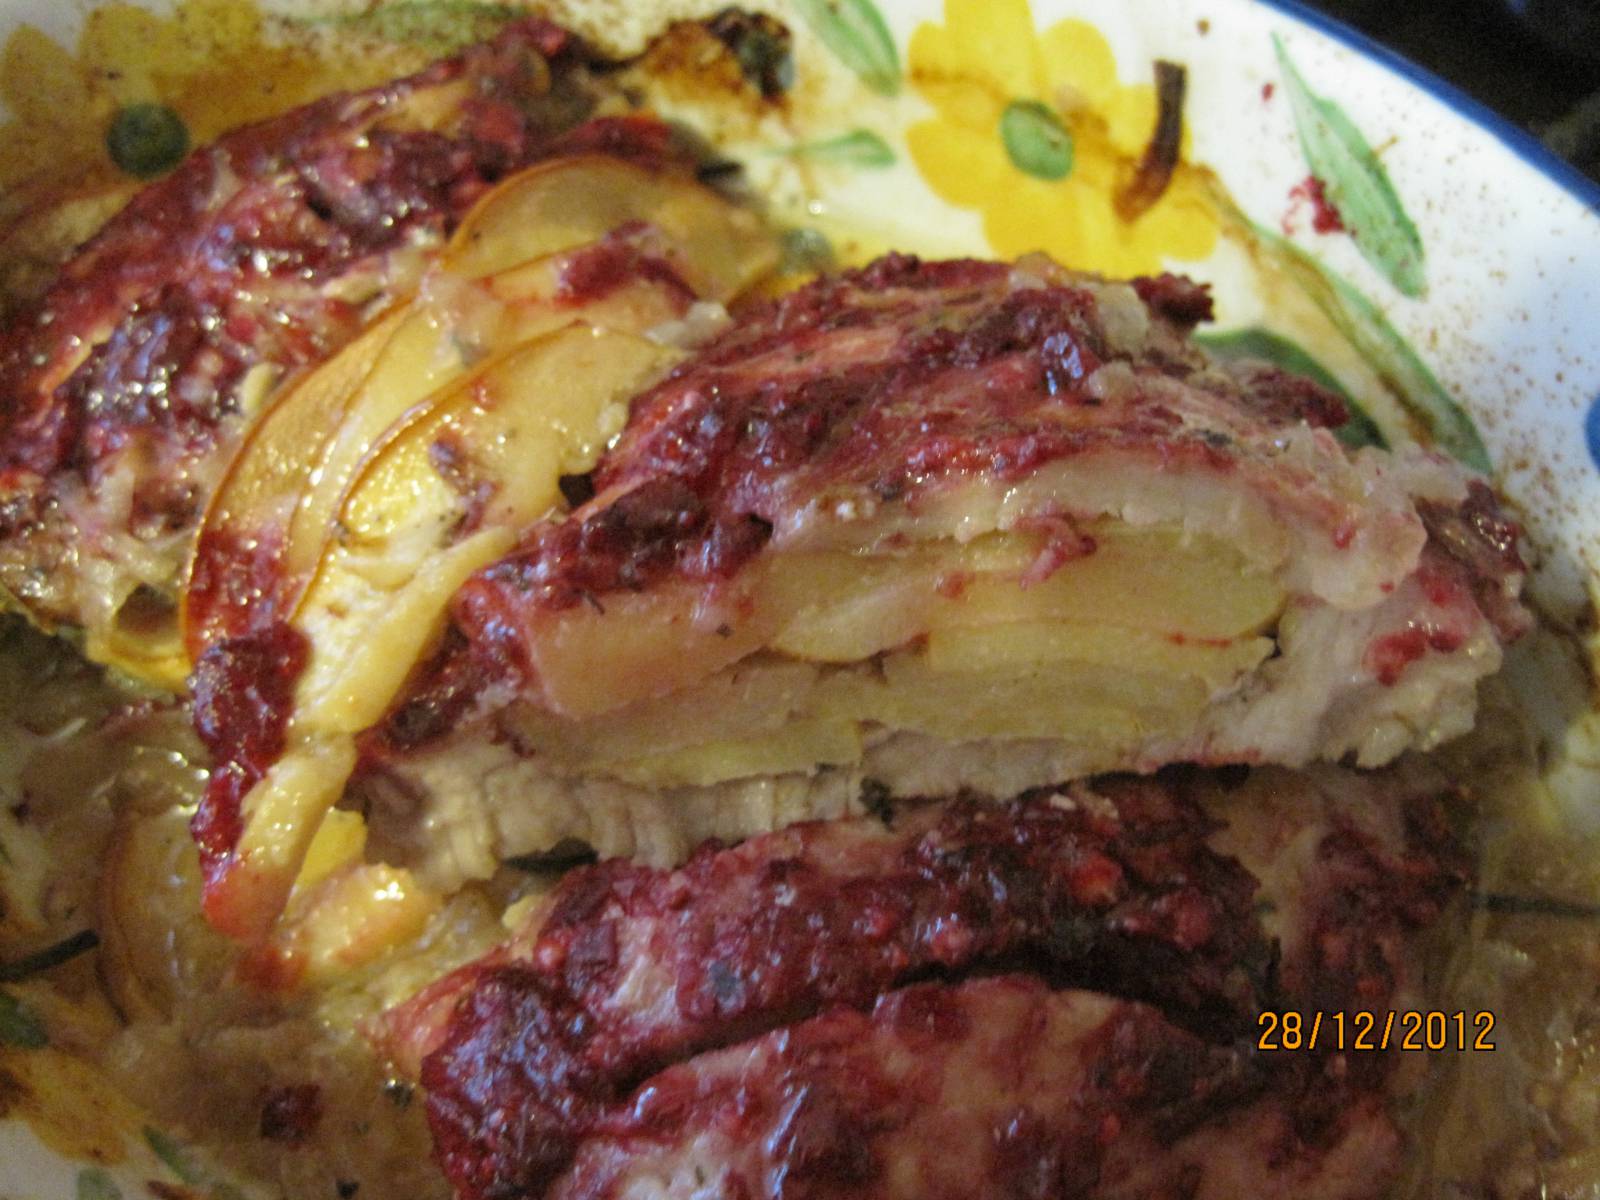 Cerdo relleno de manzana y membrillo con salsa de arándanos